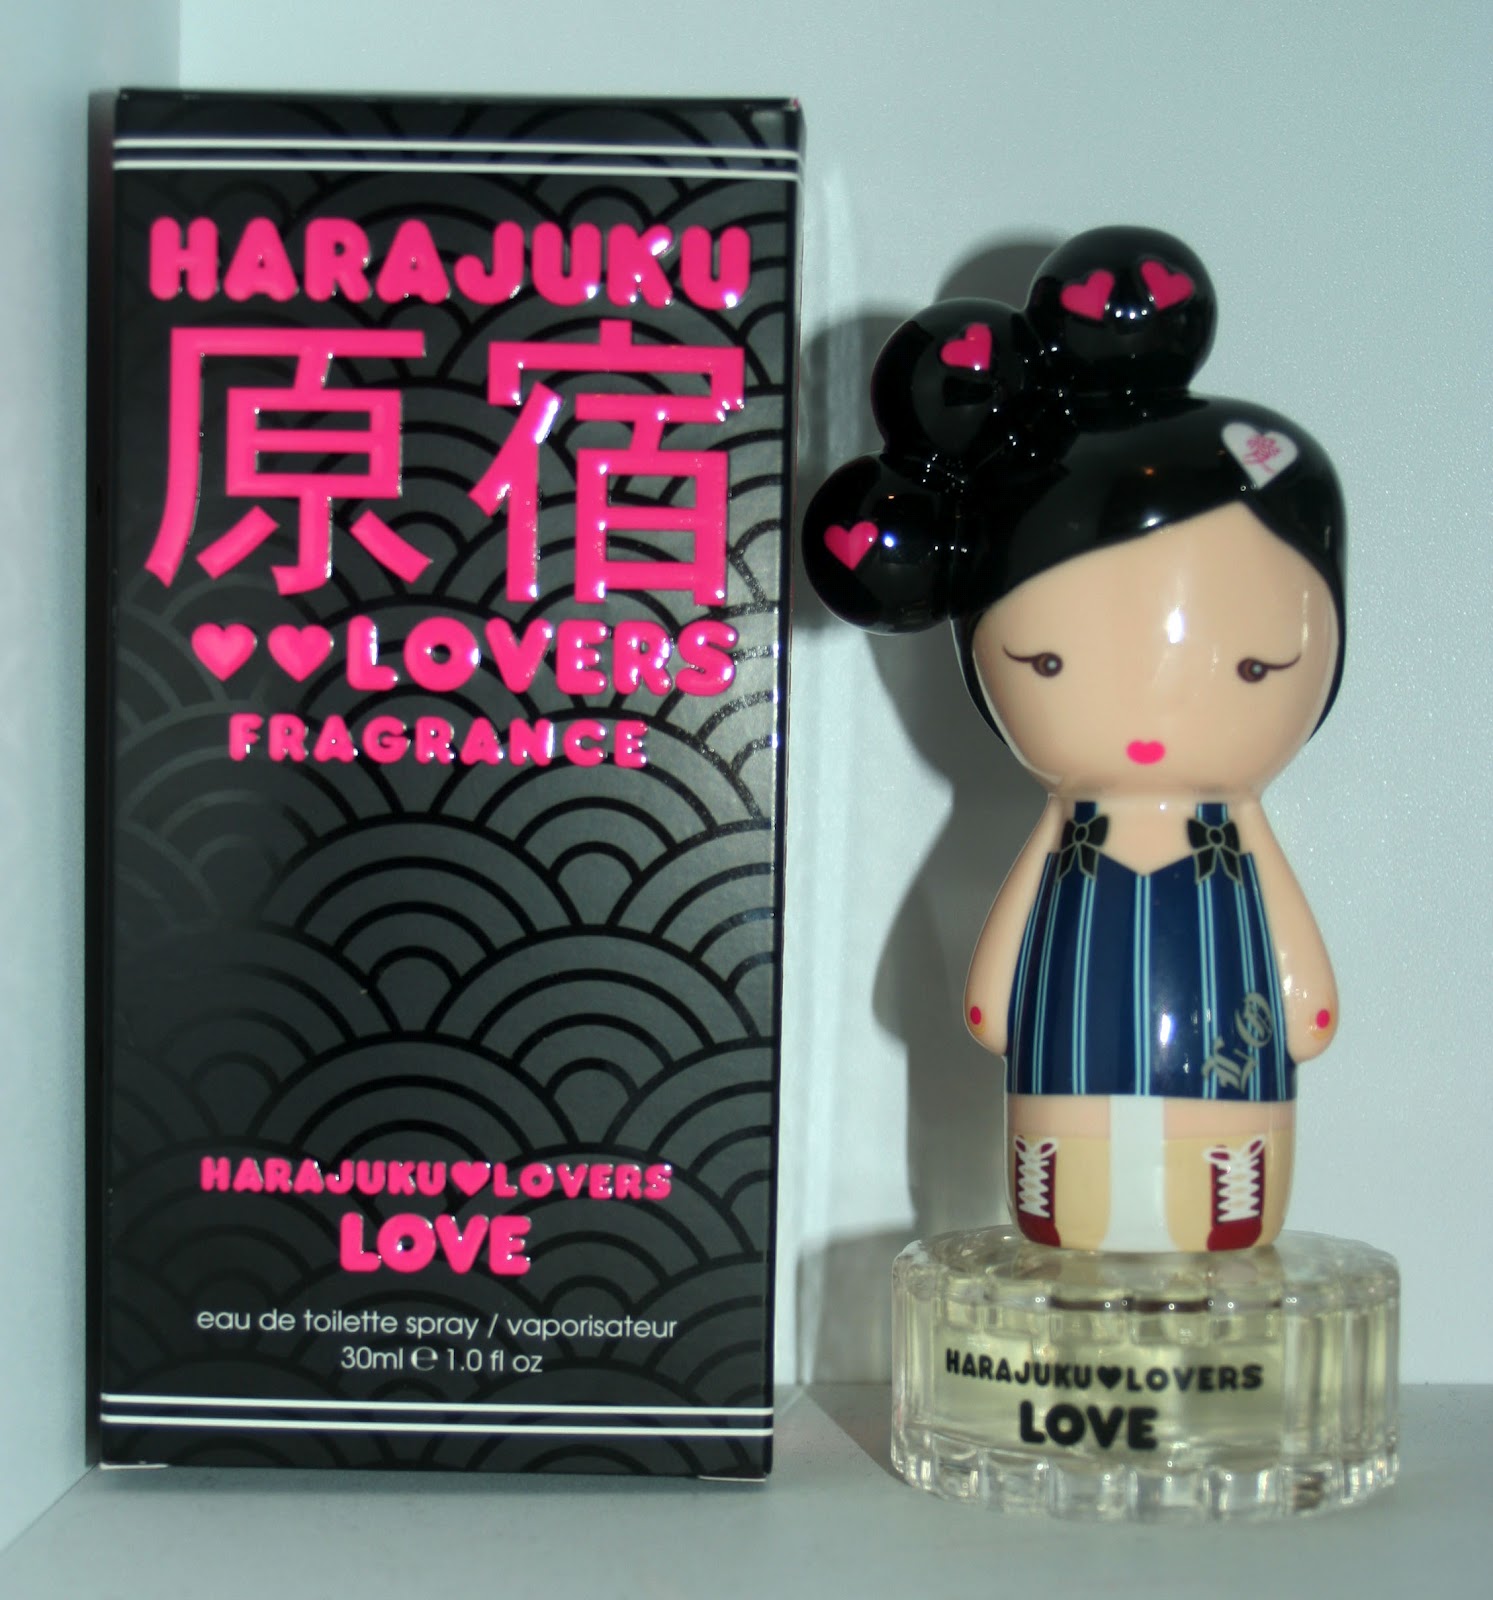 Духи Harajuku lovers Wicked Style. Harajuku lovers наушники. Harajuku lovers Love. Perfume of Love игра.